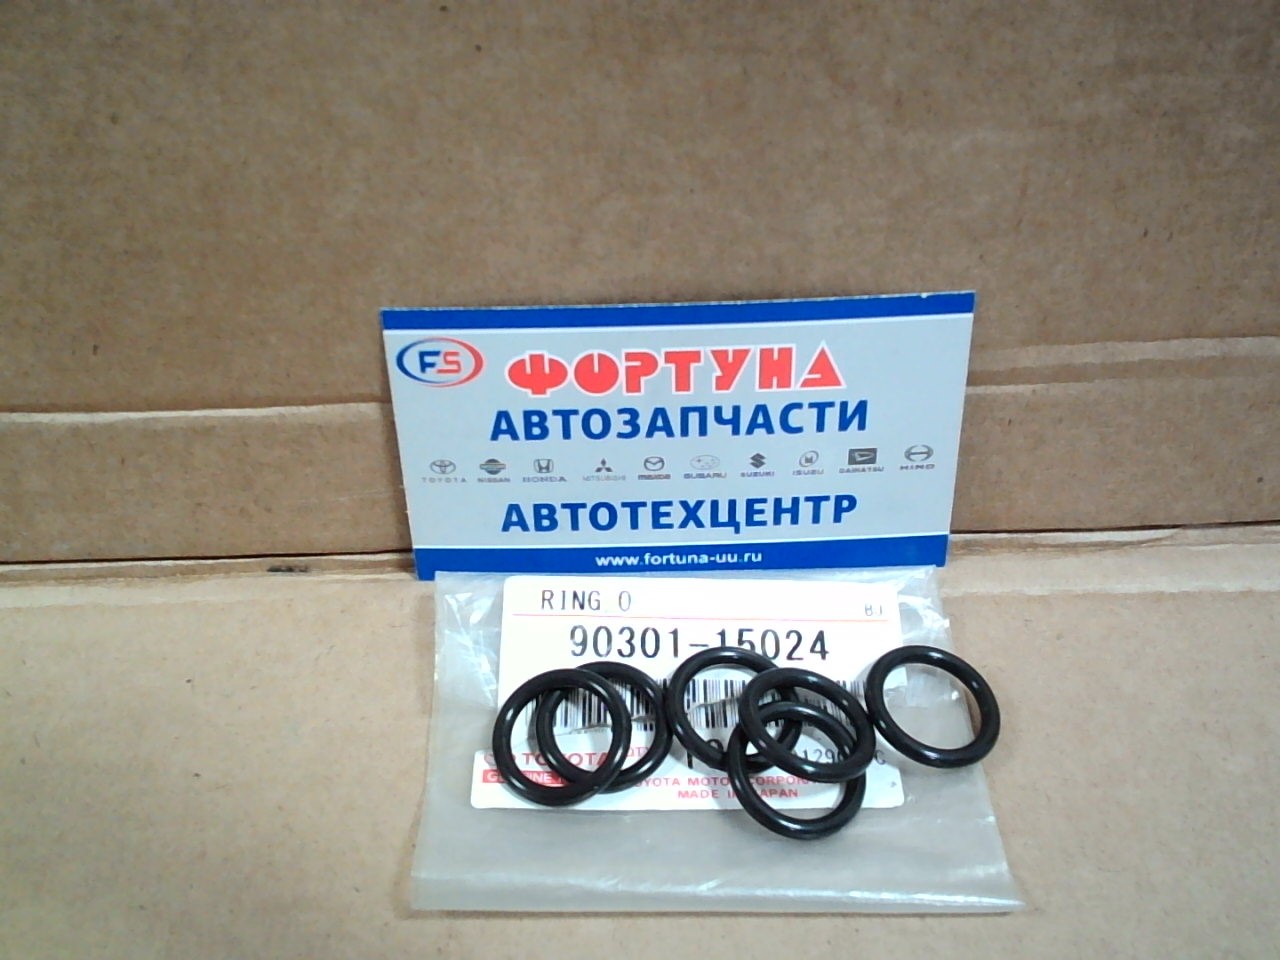 Кольцо резиновое 90301-15024 TOYOTA (кольцо уплотнительное топливного фильтра Toyota) на  